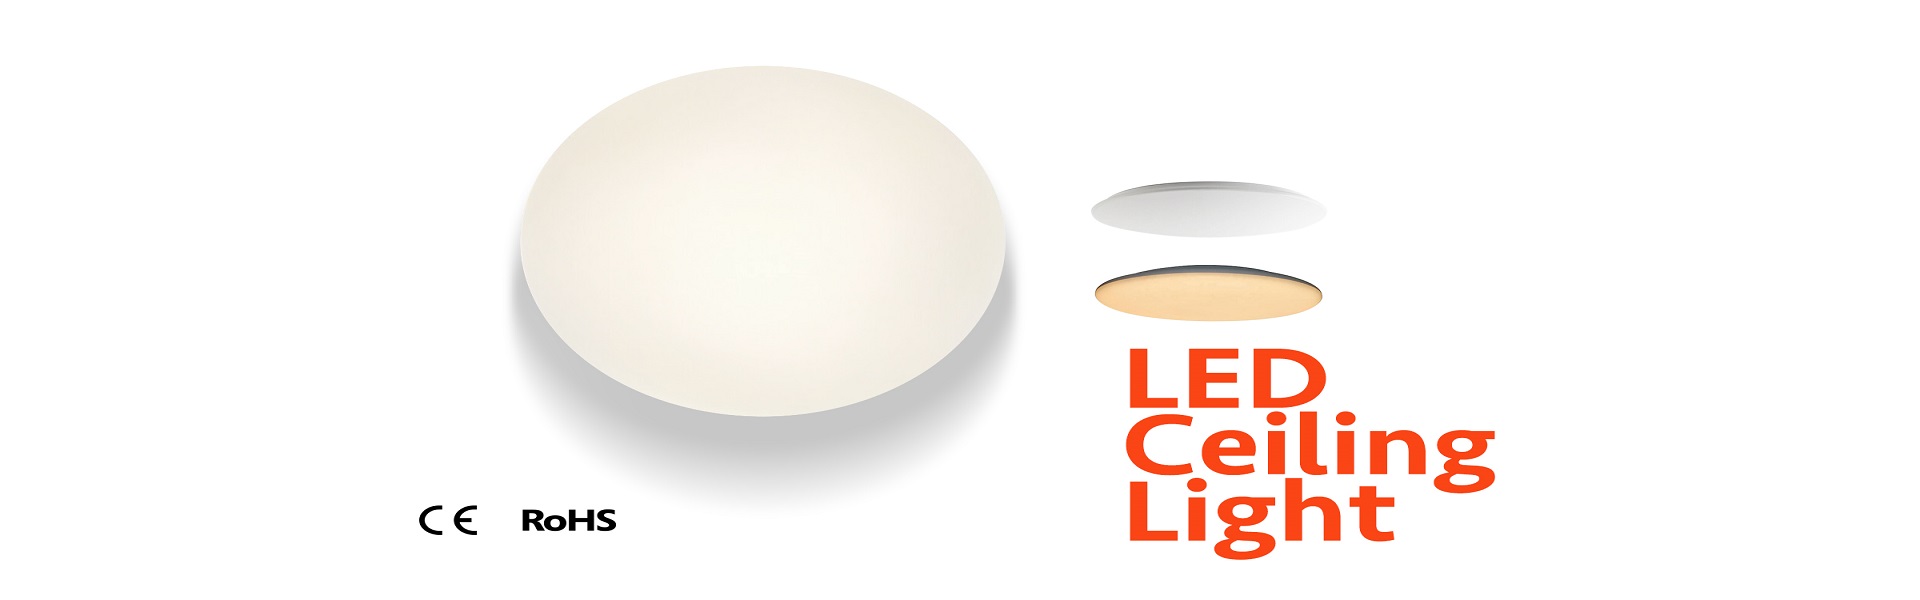 12-LED-Ceiling-Lampu